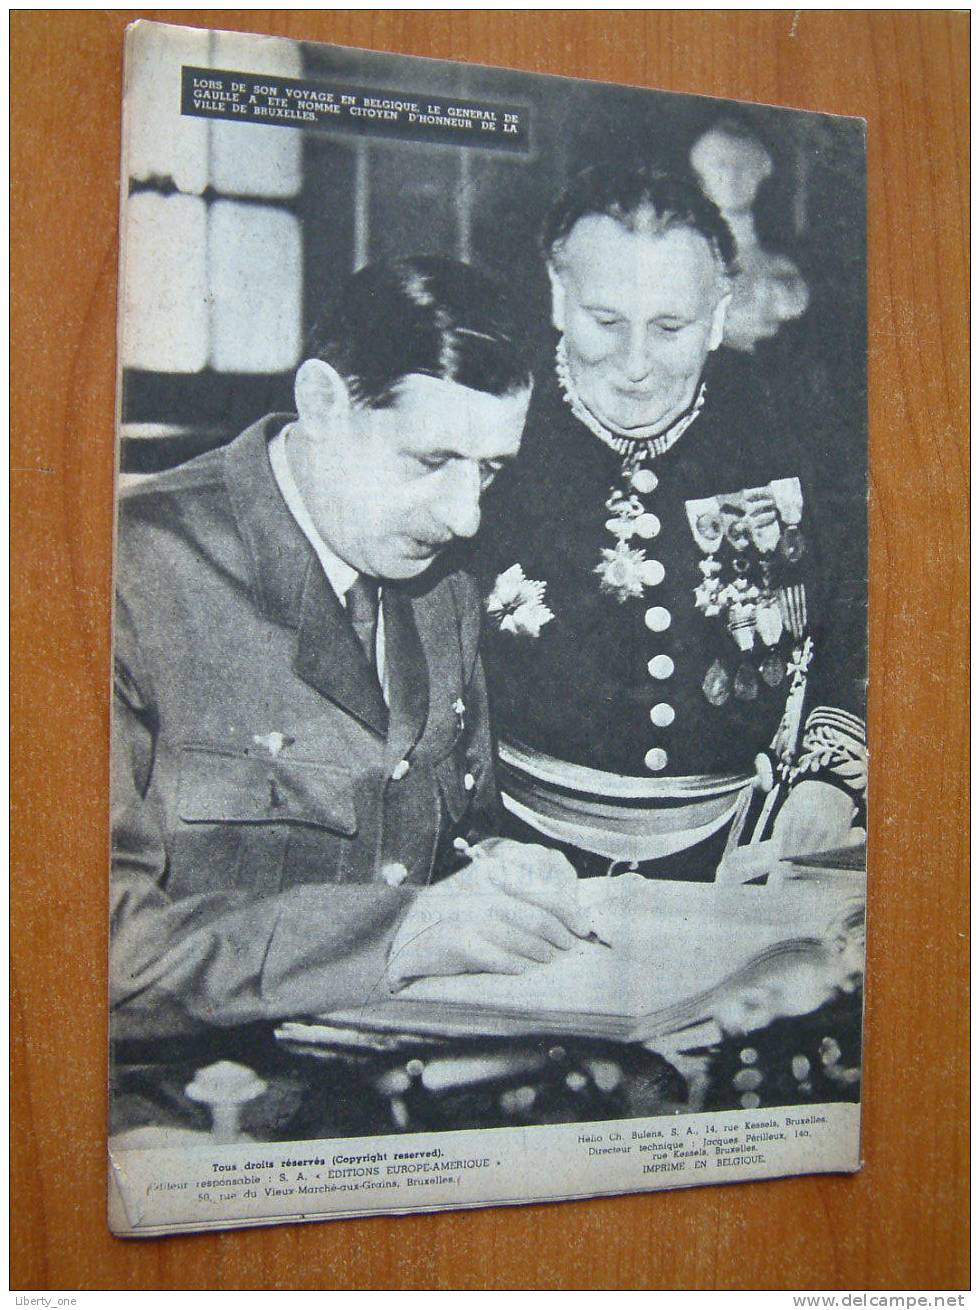 EUROPE AMERIQUE ( Images, Enquêtes Et Reportages ) Bruxelles N° 22 - 18 OCT. 1945 ( Kijk Naar Détails Op De Foto´s ) ! - Other & Unclassified